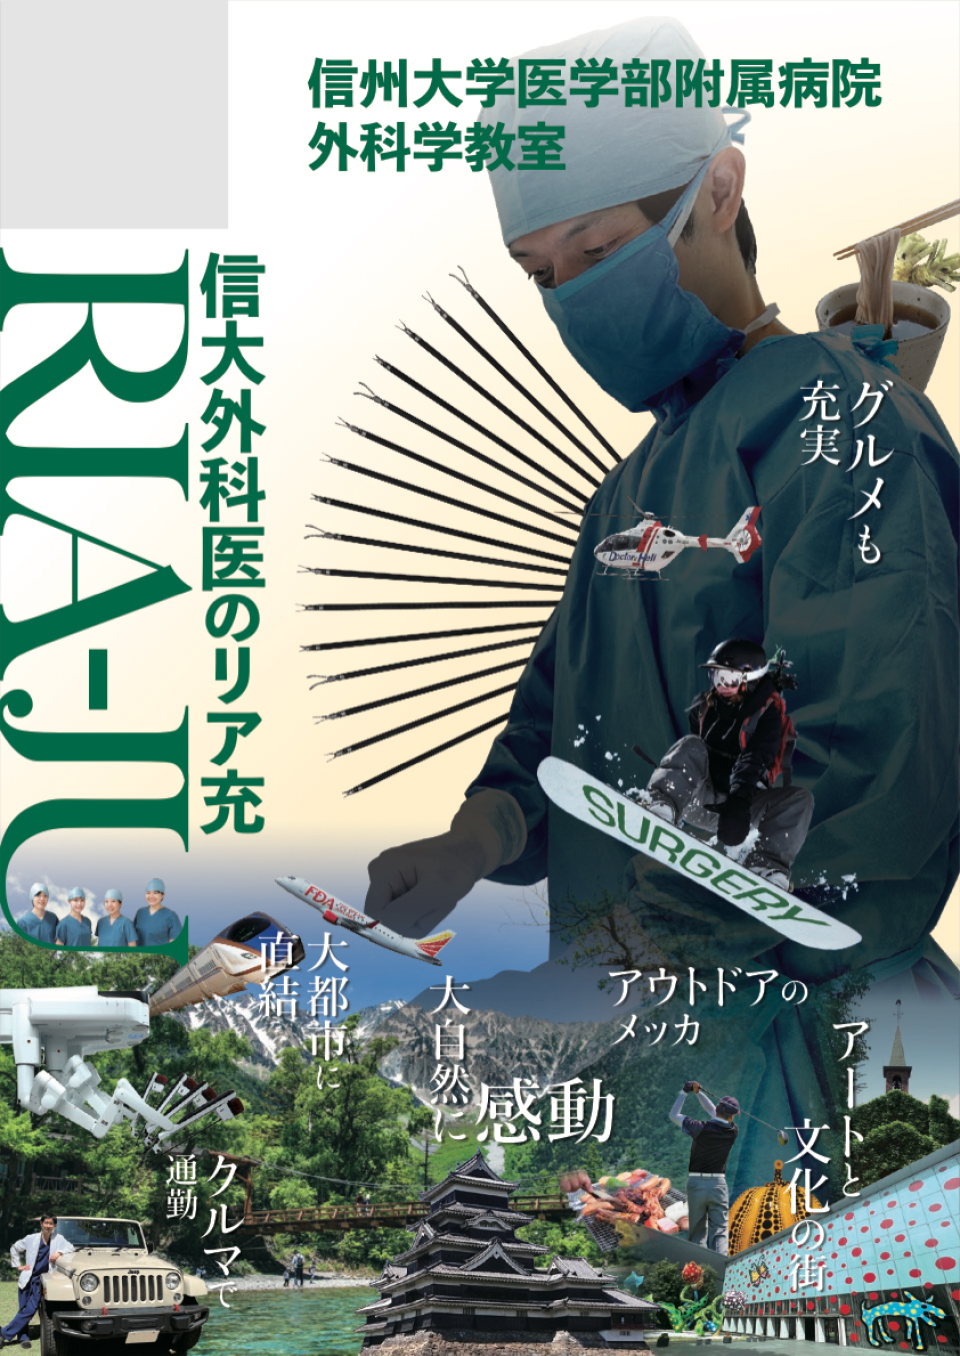 日本外科学会定期学術集会のポスター展示会 信州の魅力満載のポスターを制作